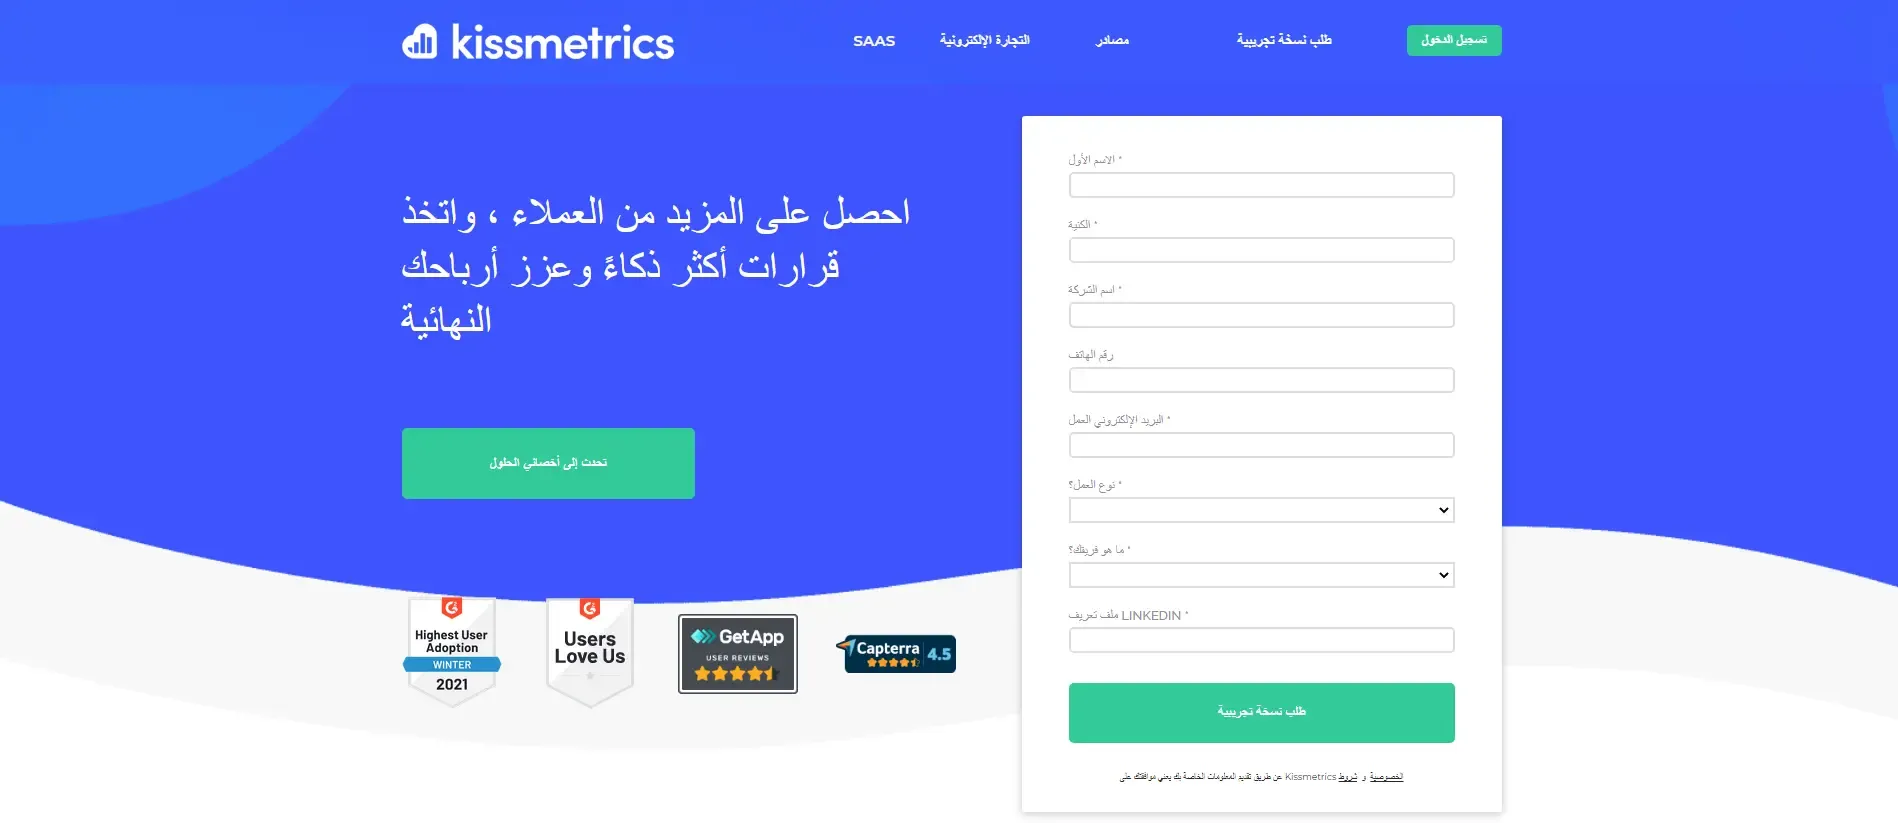 وادي التكنولوجيا | بالعربية: أداة KissMetrics لتحليل المواقع وزيارات المستخدمين